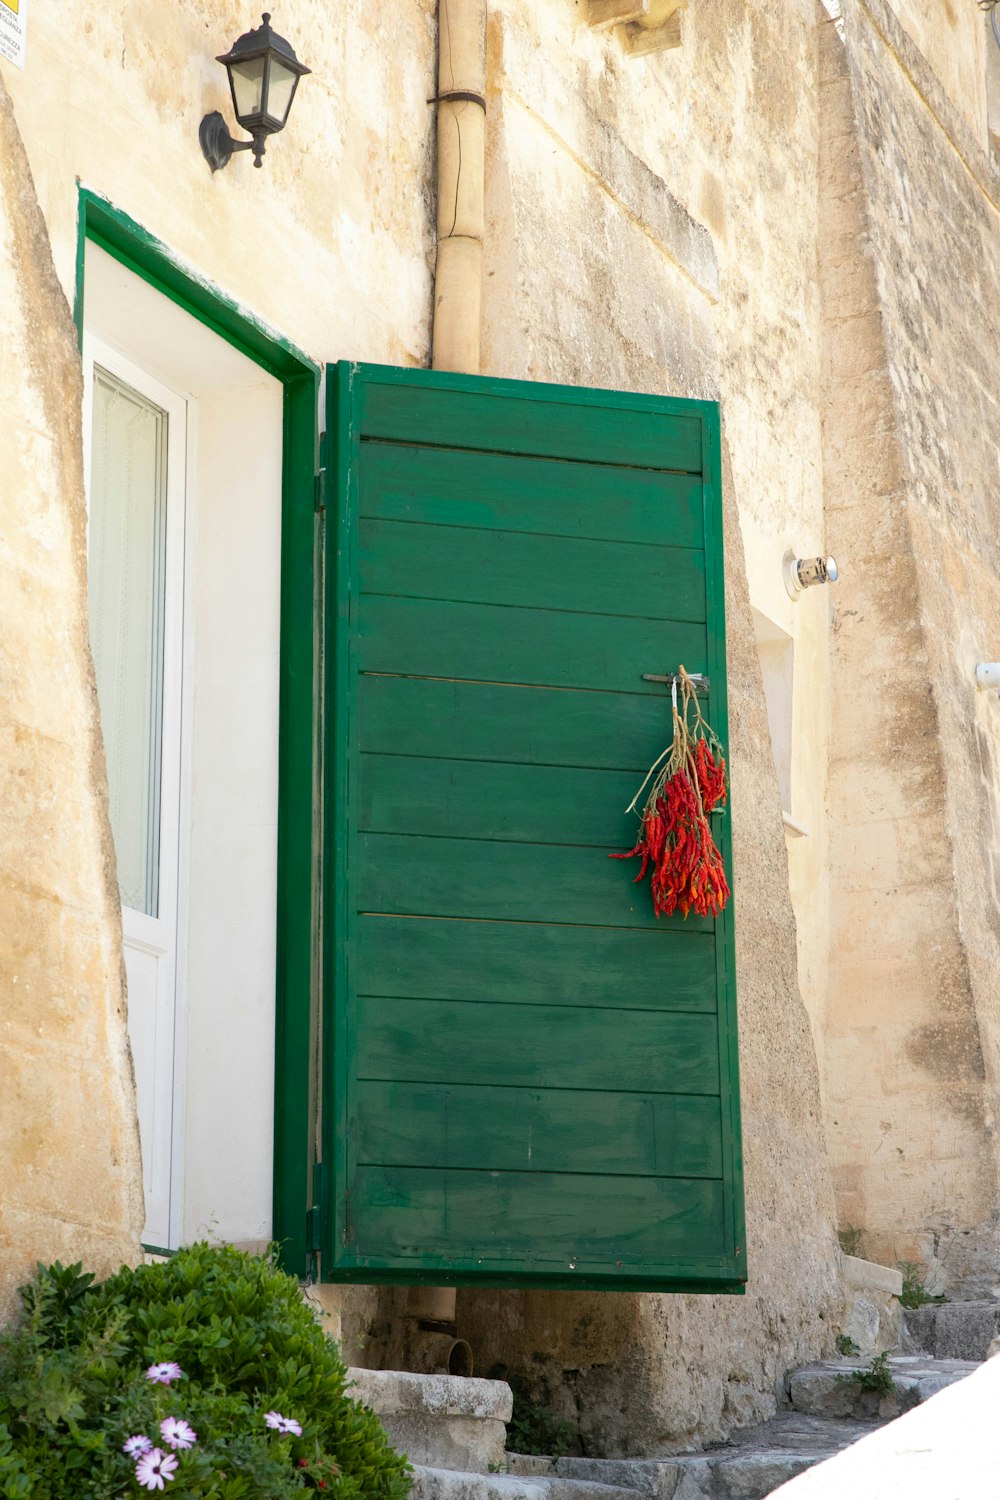 mocio rosso e bianco appoggiato su porta di legno verde